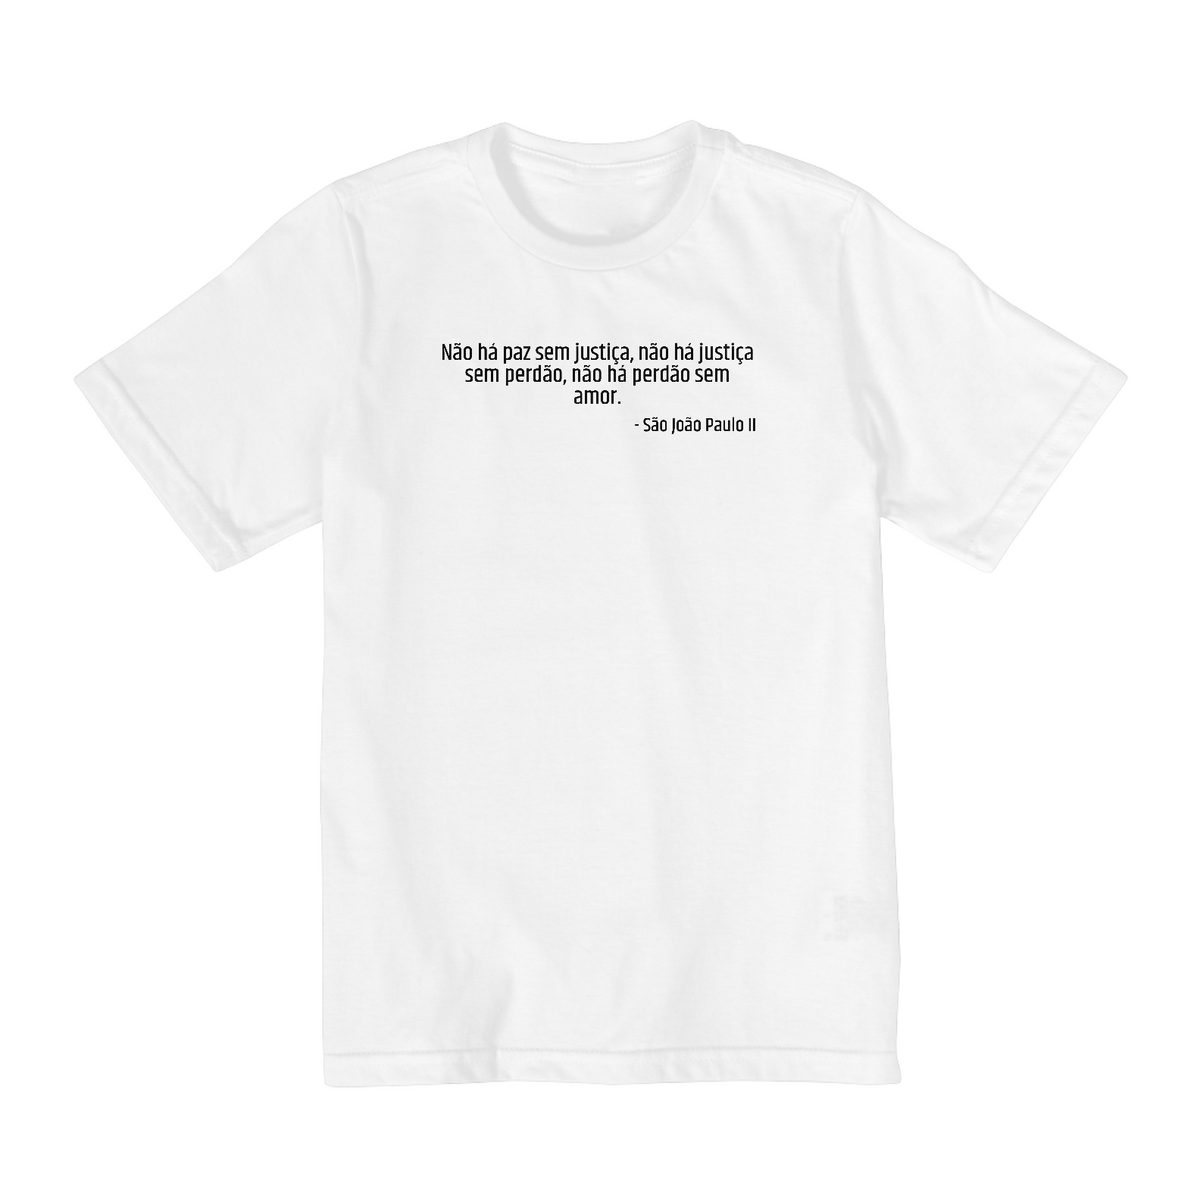 Nome do produto: Camiseta Juvenil São João Paulo II - Coleção Santos